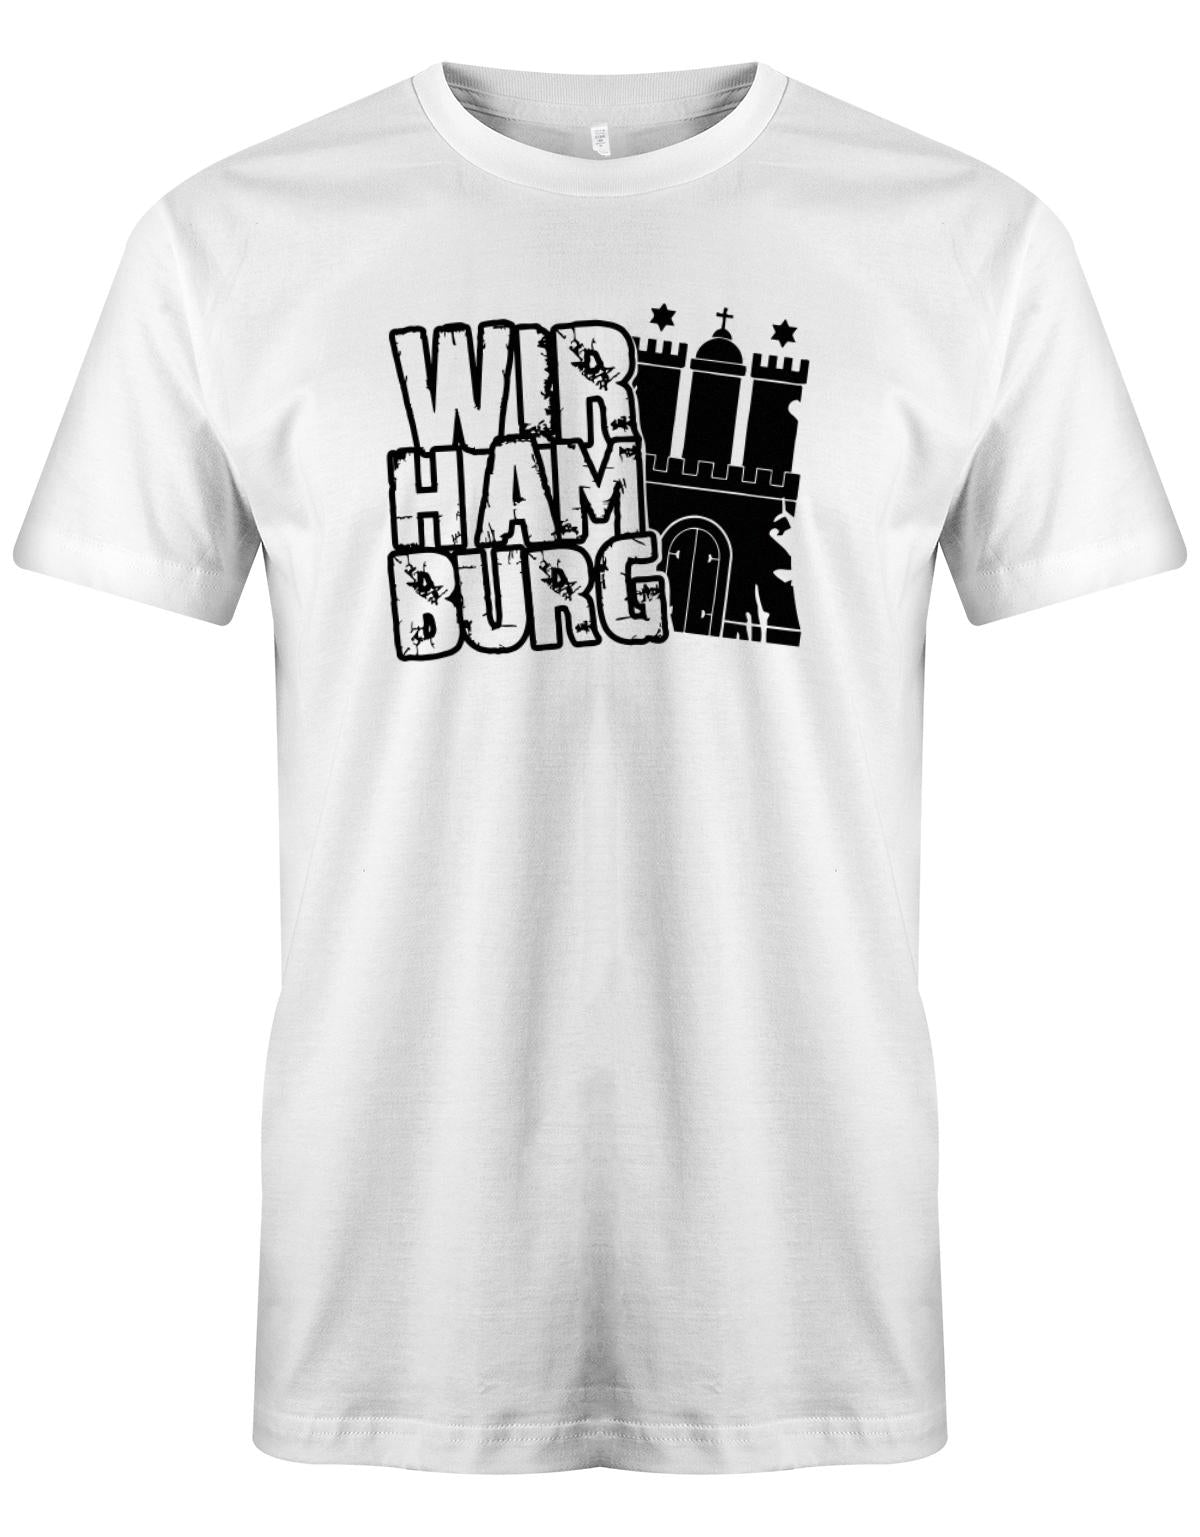 Wir-Hamburg-Herren-Shirt-Weiss